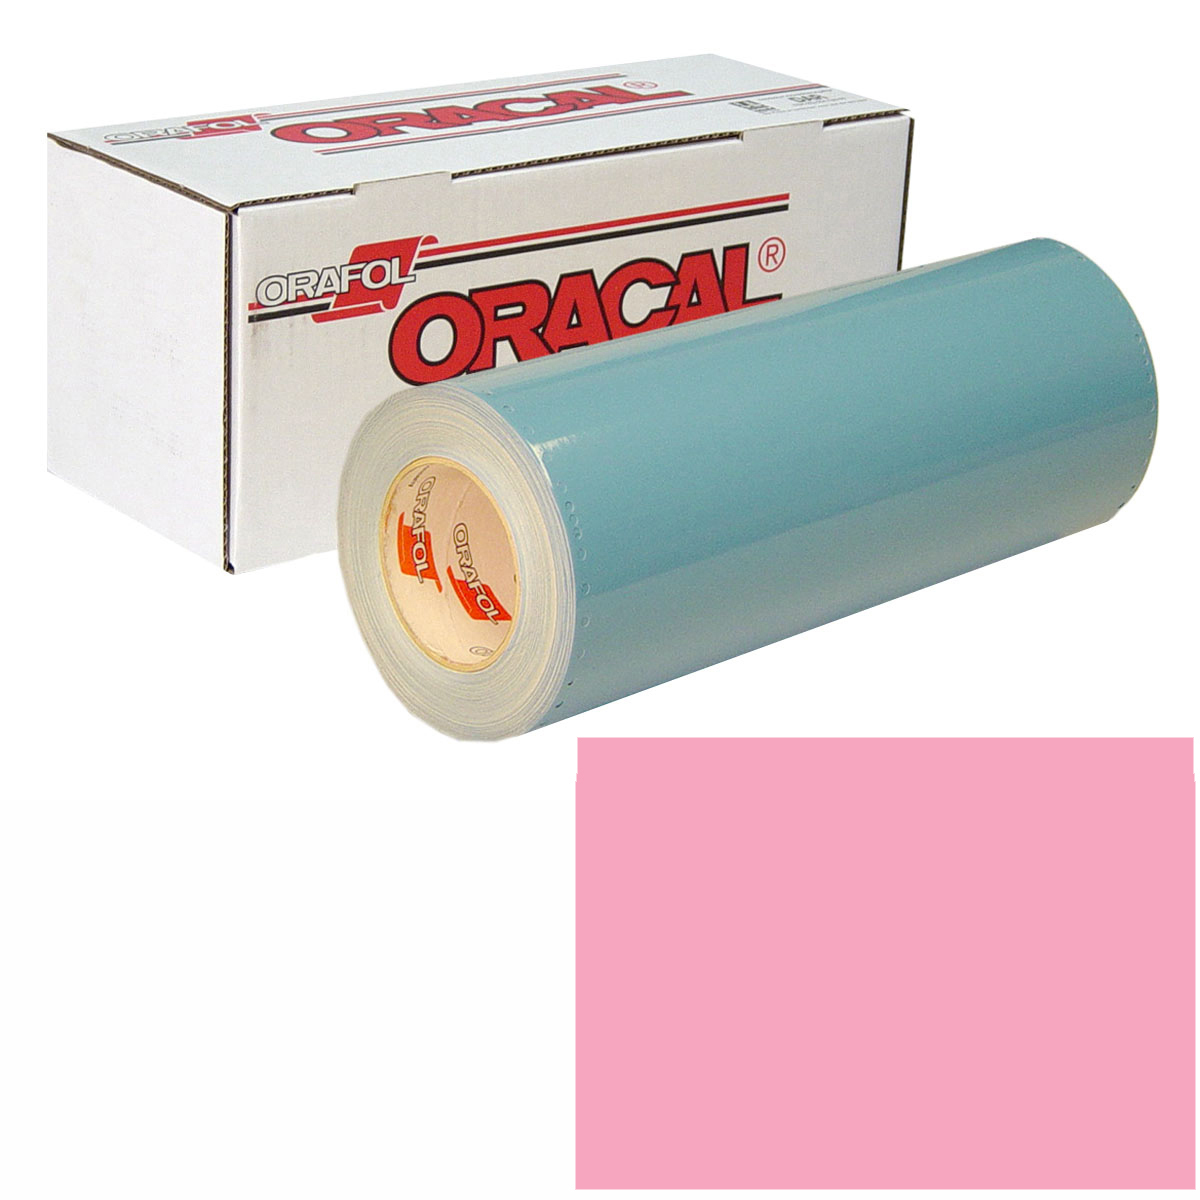 ORACAL 751 Unp 24in X 10yd 045 Soft Pink